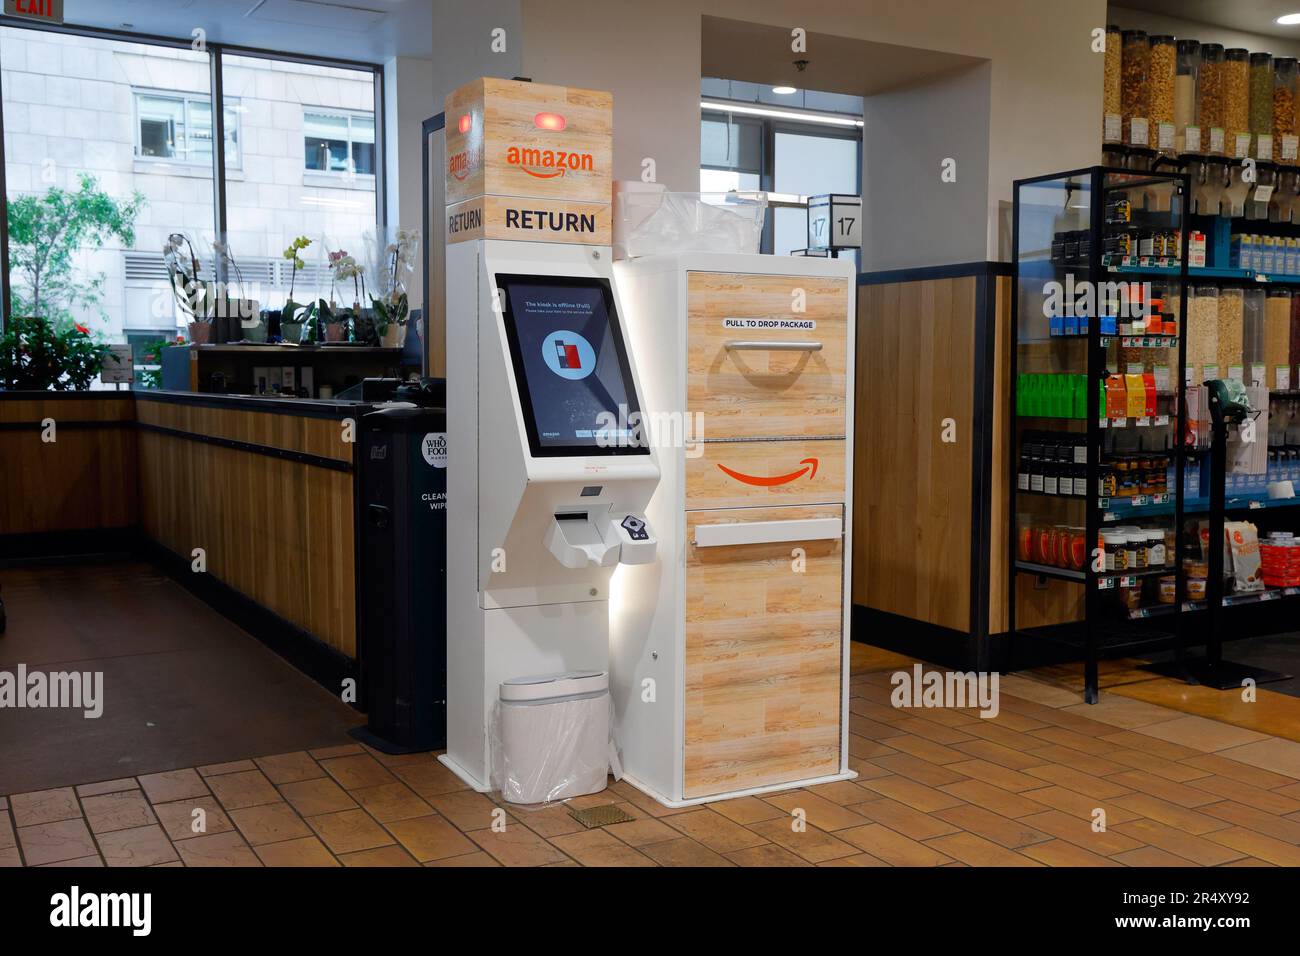 Un kiosque automatisé de retour Amazon sur un marché de produits alimentaires entiers pour déposer les retours d'articles achetés auprès du détaillant en ligne. Banque D'Images